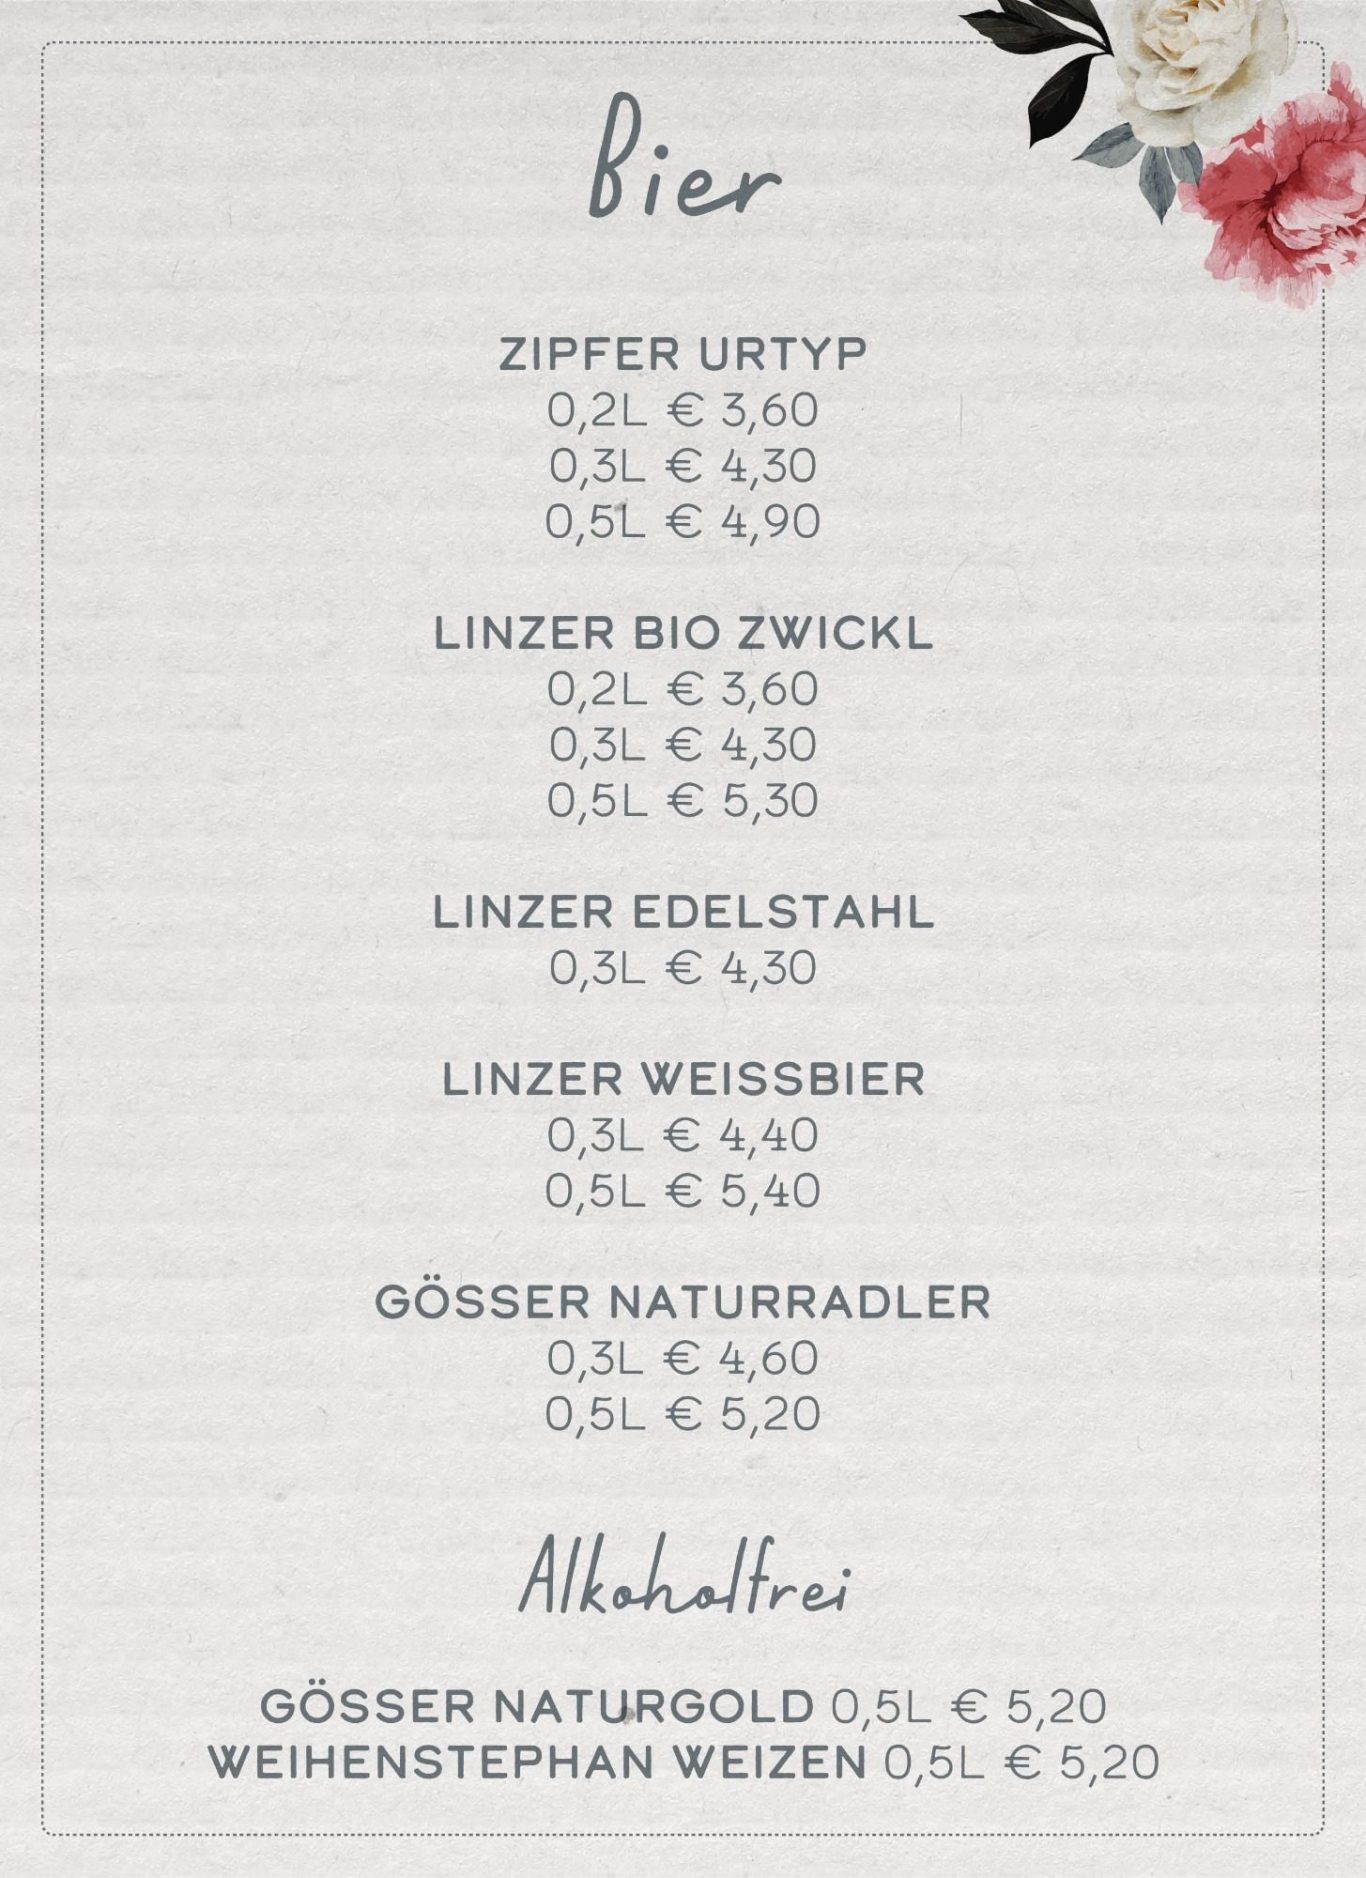 Linzer Bio Zwickl 0,2L 3,60€ 0,3L 4,30€ 0,5L 5,30€  Linzer Edelstahl 0,3L 4,30€   Linzer Weißbier 0,3L 4,40€ 0,5L 5,40€  Alkoholfrei vom Flaschl Gösser Naturgold 0,5L 5,20€  Weihenstephan alkoholfrei Weizen 0,5L 5,20€ Zipfer Linzer Original 0,2L 3,60€ 0,3L 4,30€ 0,5L 4,90€ Gösser Naturradler 0,5L 5,20€  0,3L 4,60€